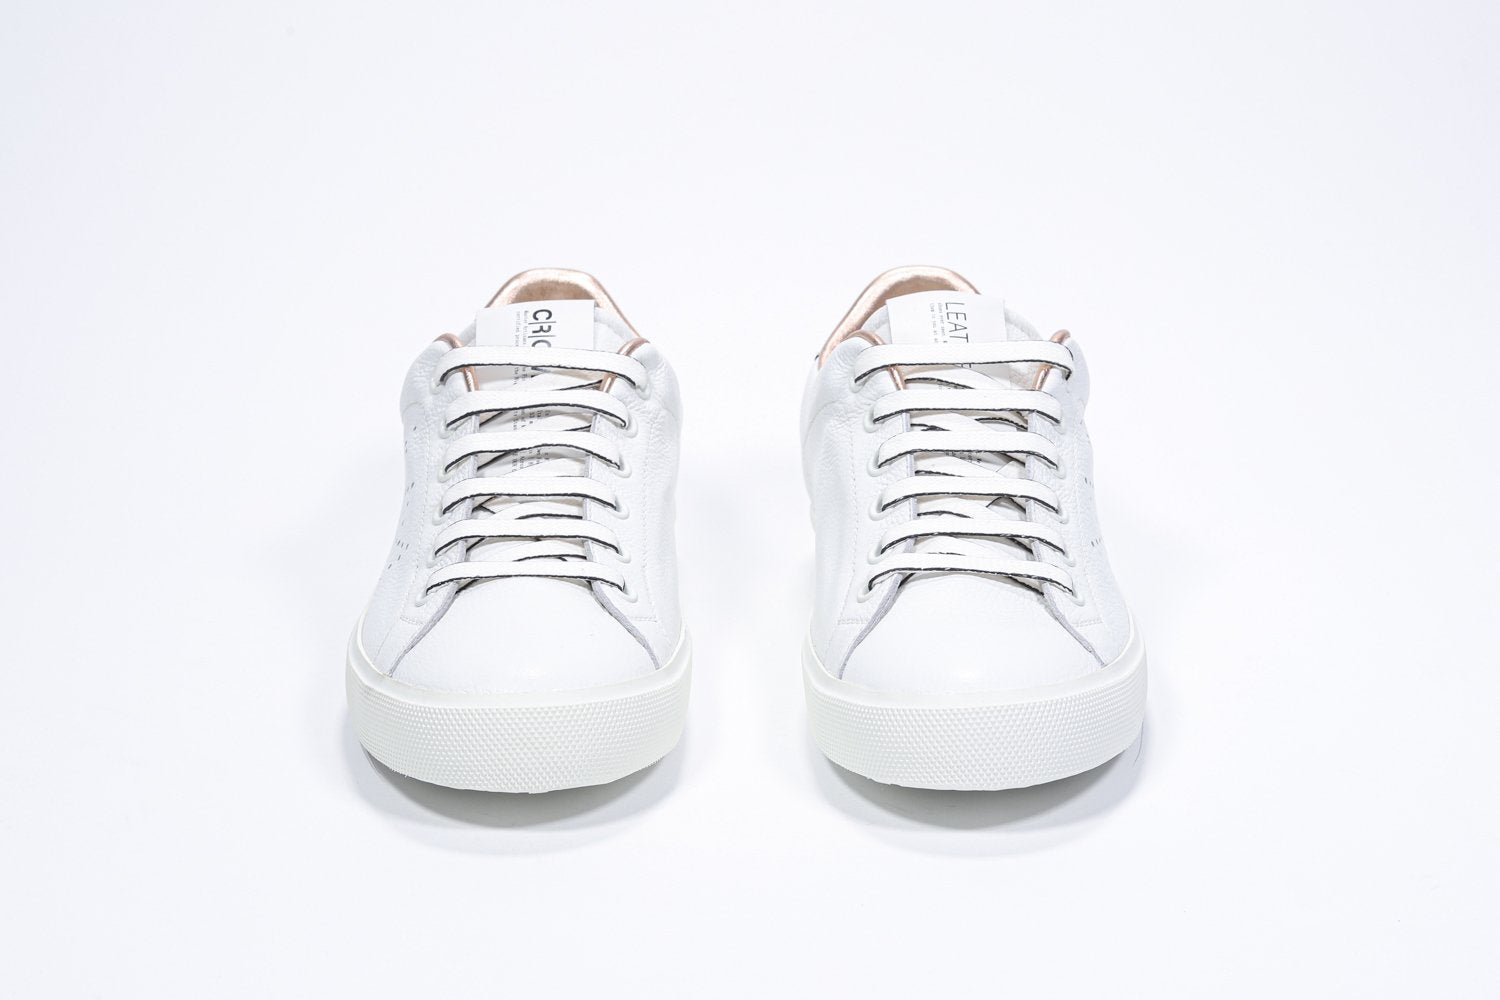 Vorderansicht des weißen Low-Top-Modells sneaker mit roségoldenen Metallic-Details und perforiertem Kronenlogo auf dem Obermaterial. Obermaterial aus Vollleder und weiße Gummisohle.